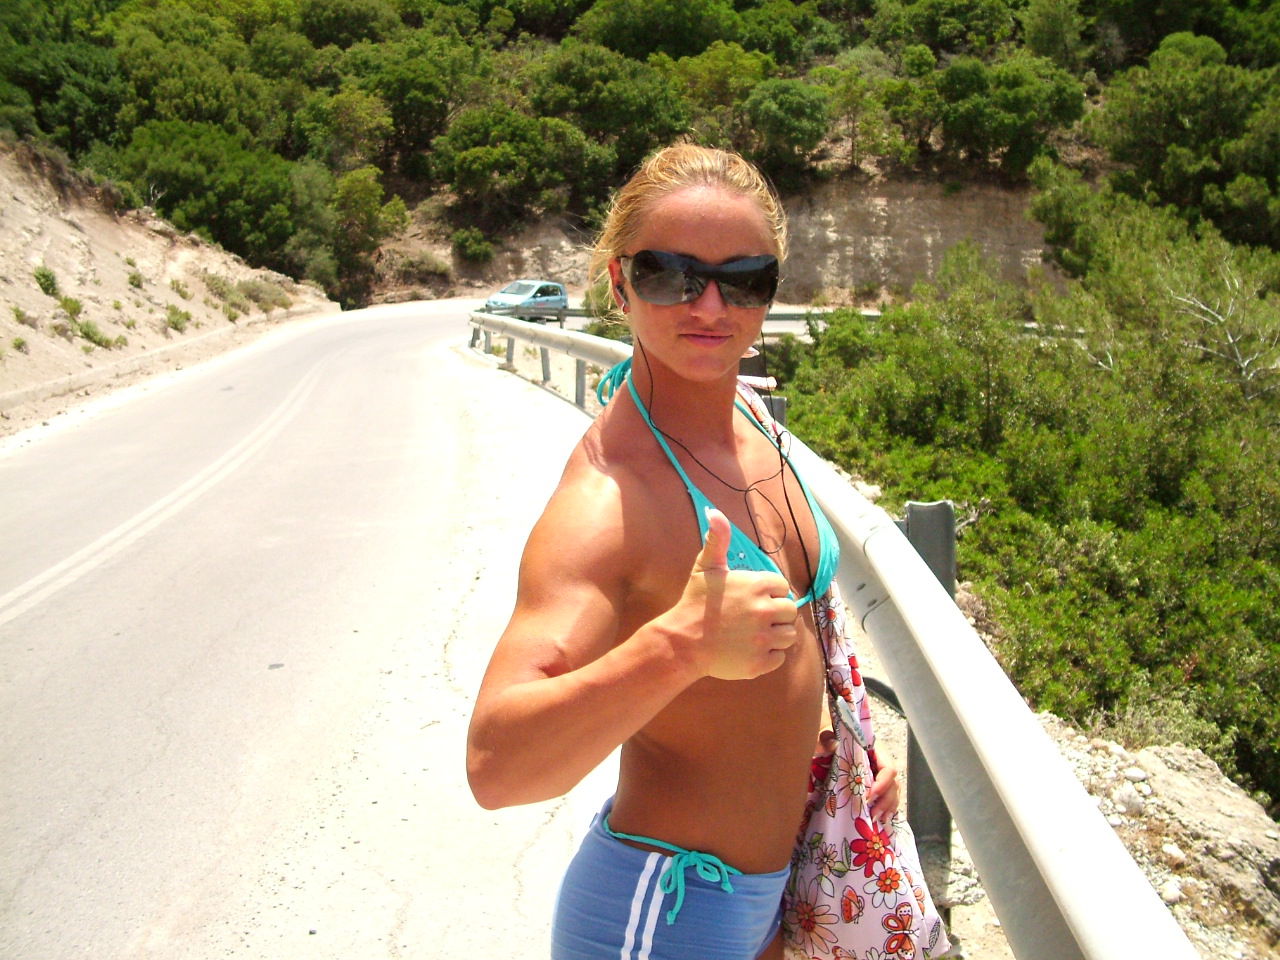 Meet Katka Kuptova - muscular fitness coach from Czech Republic.